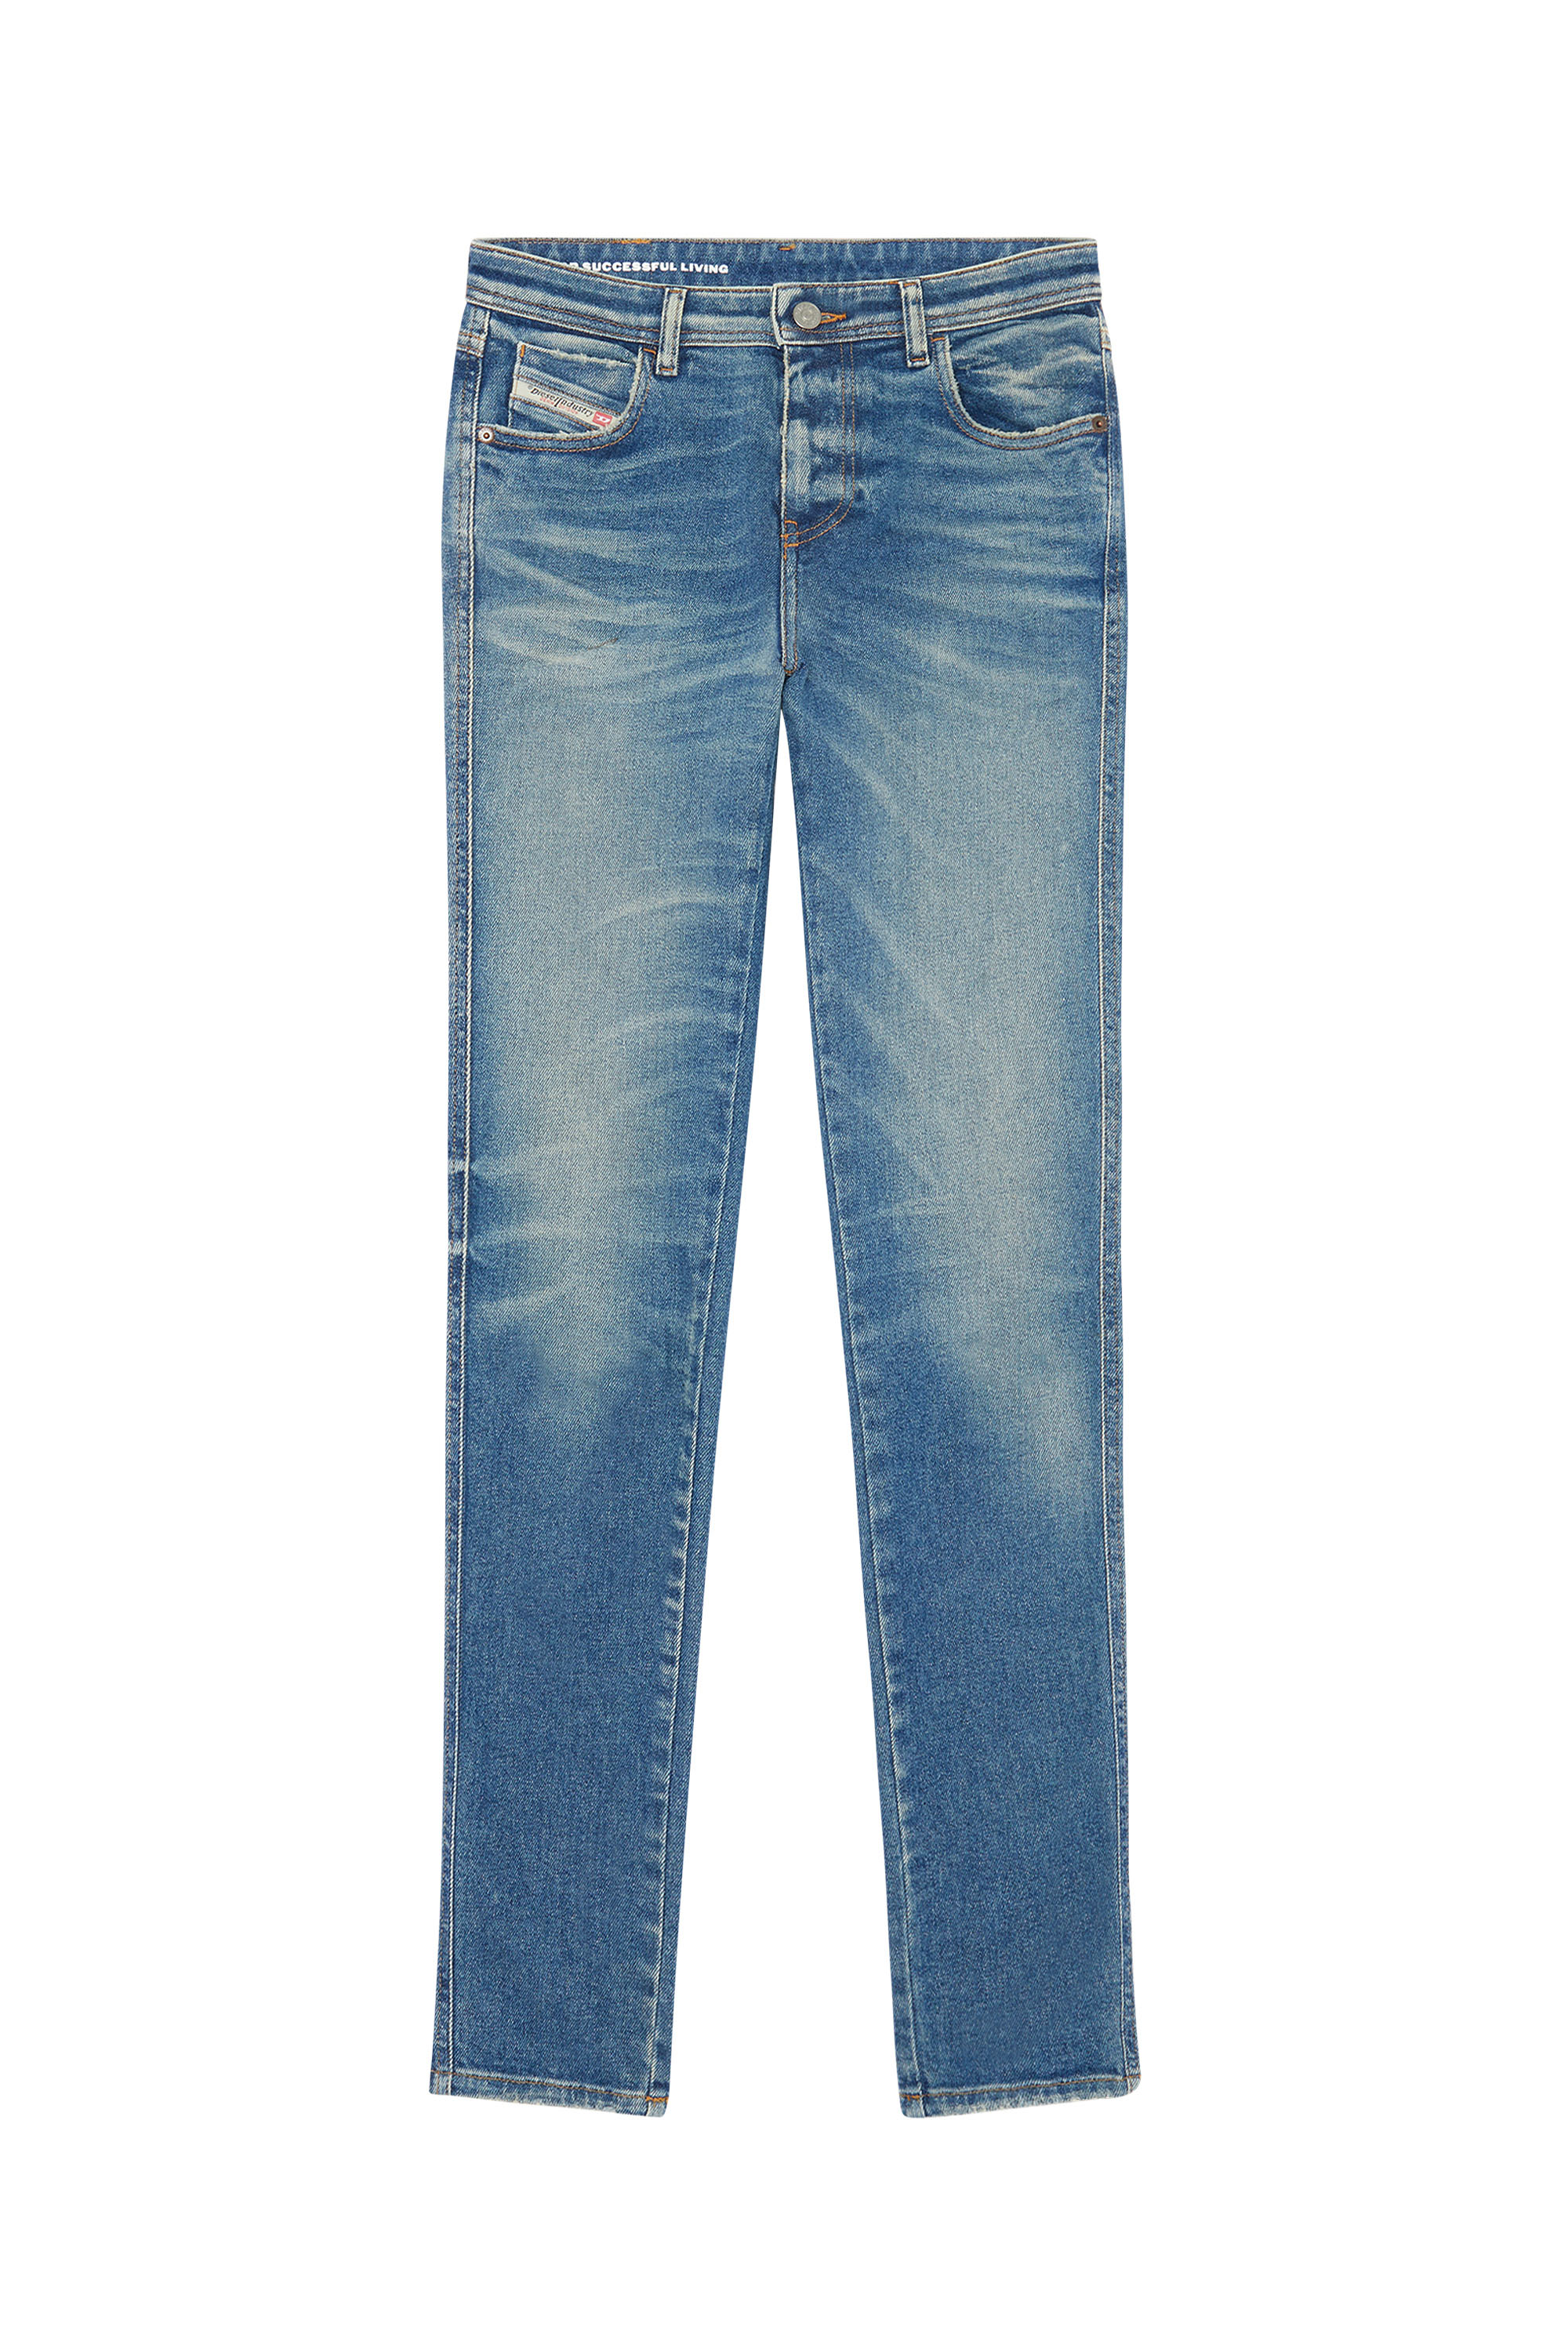 Diesel - Skinny Jeans 2015 Babhila 09E88,  - Image 6